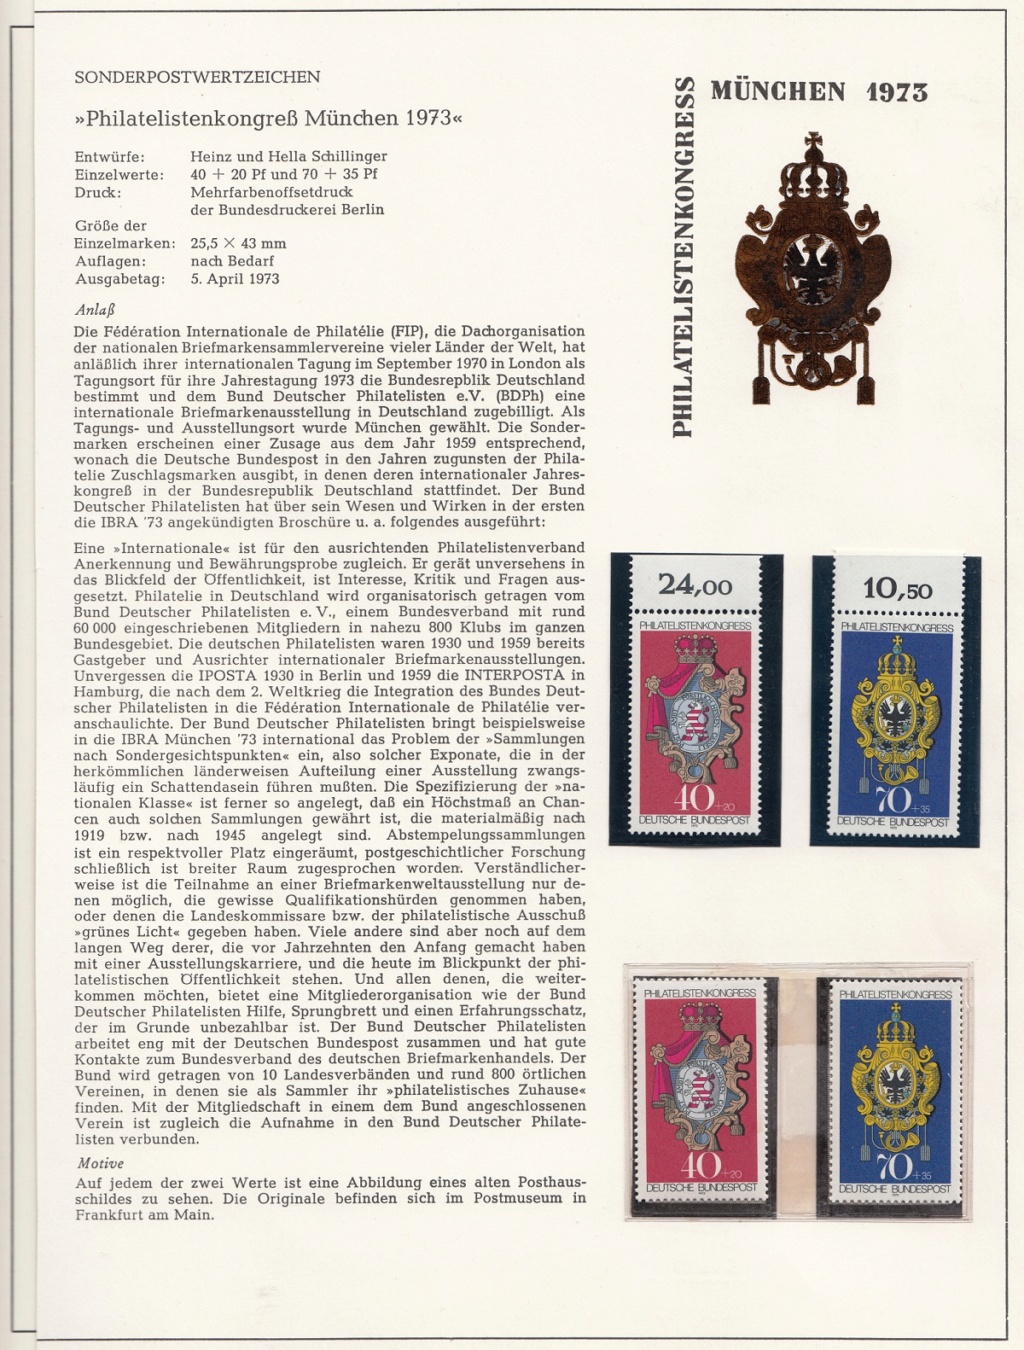 Die IBRA (Internationale Briefmarkenausstellung) München '73 Ibram115